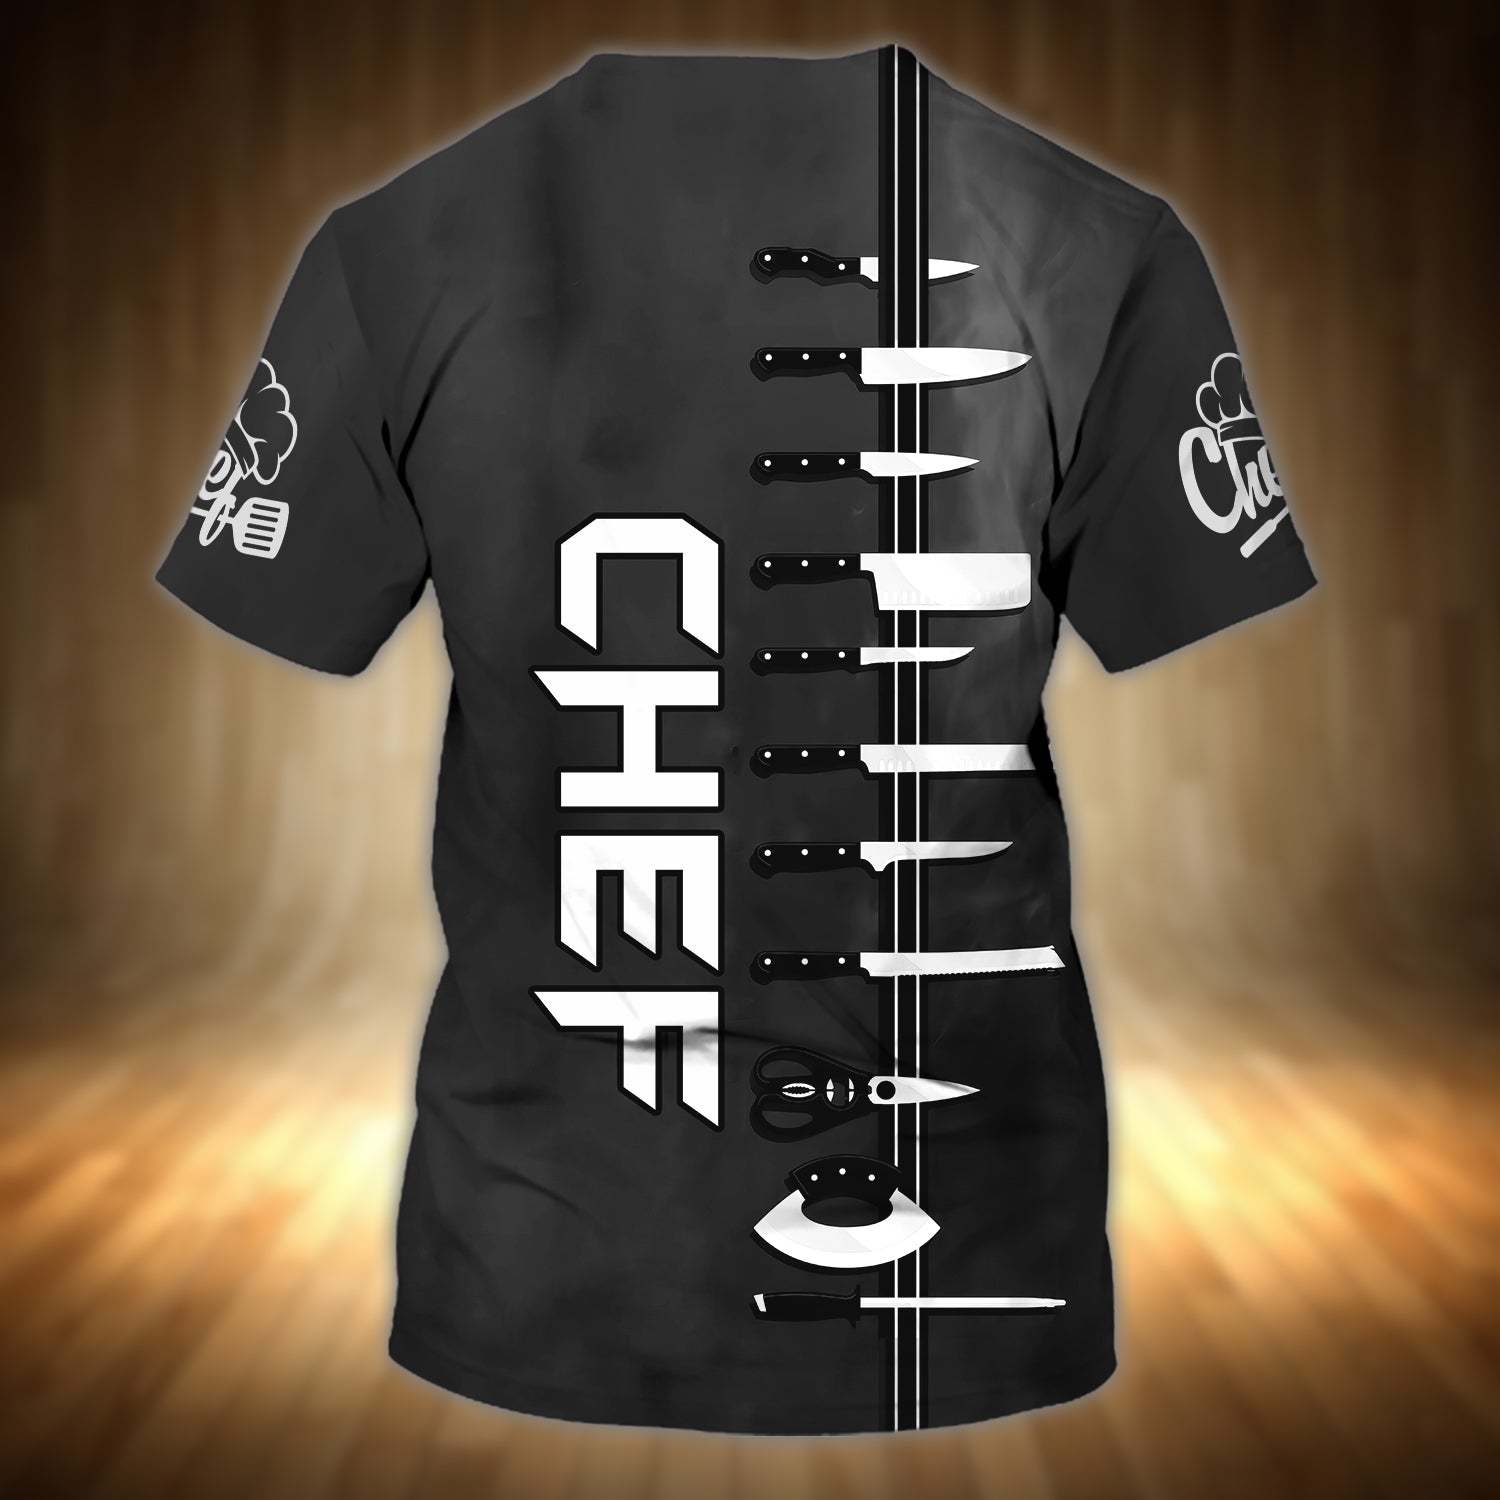 CHEF - Personalized Name 3D Tshirt 09 - RINC98